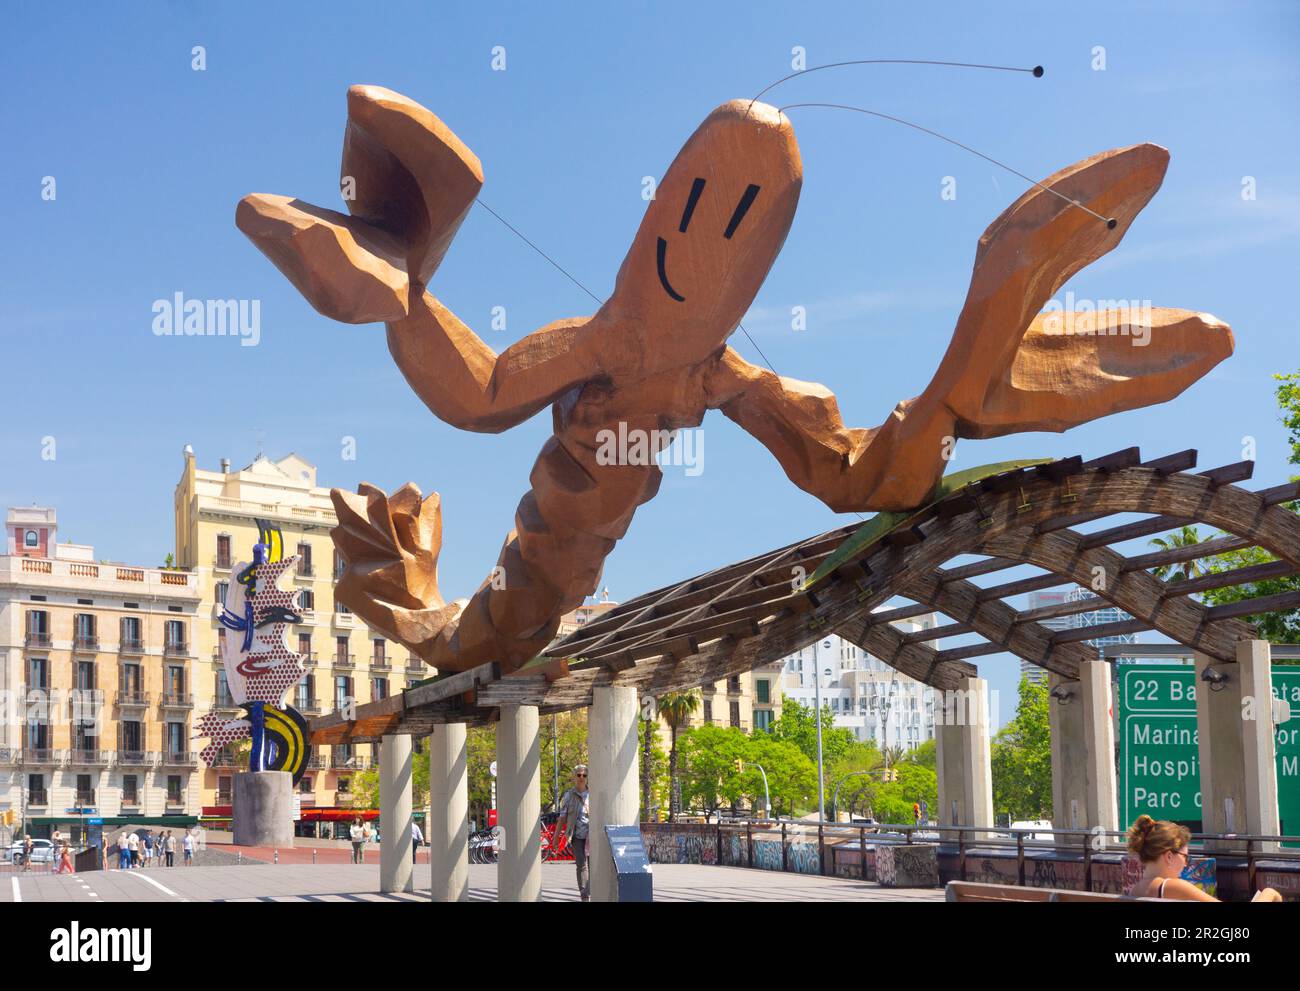 Die Hummerstatue aus Glasfaser wurde vom spanischen Künstler Javier Mariscal entworfen und gebaut. Auf der Straße neben dem alten Hafen. Barcelona, Spanien. Stockfoto